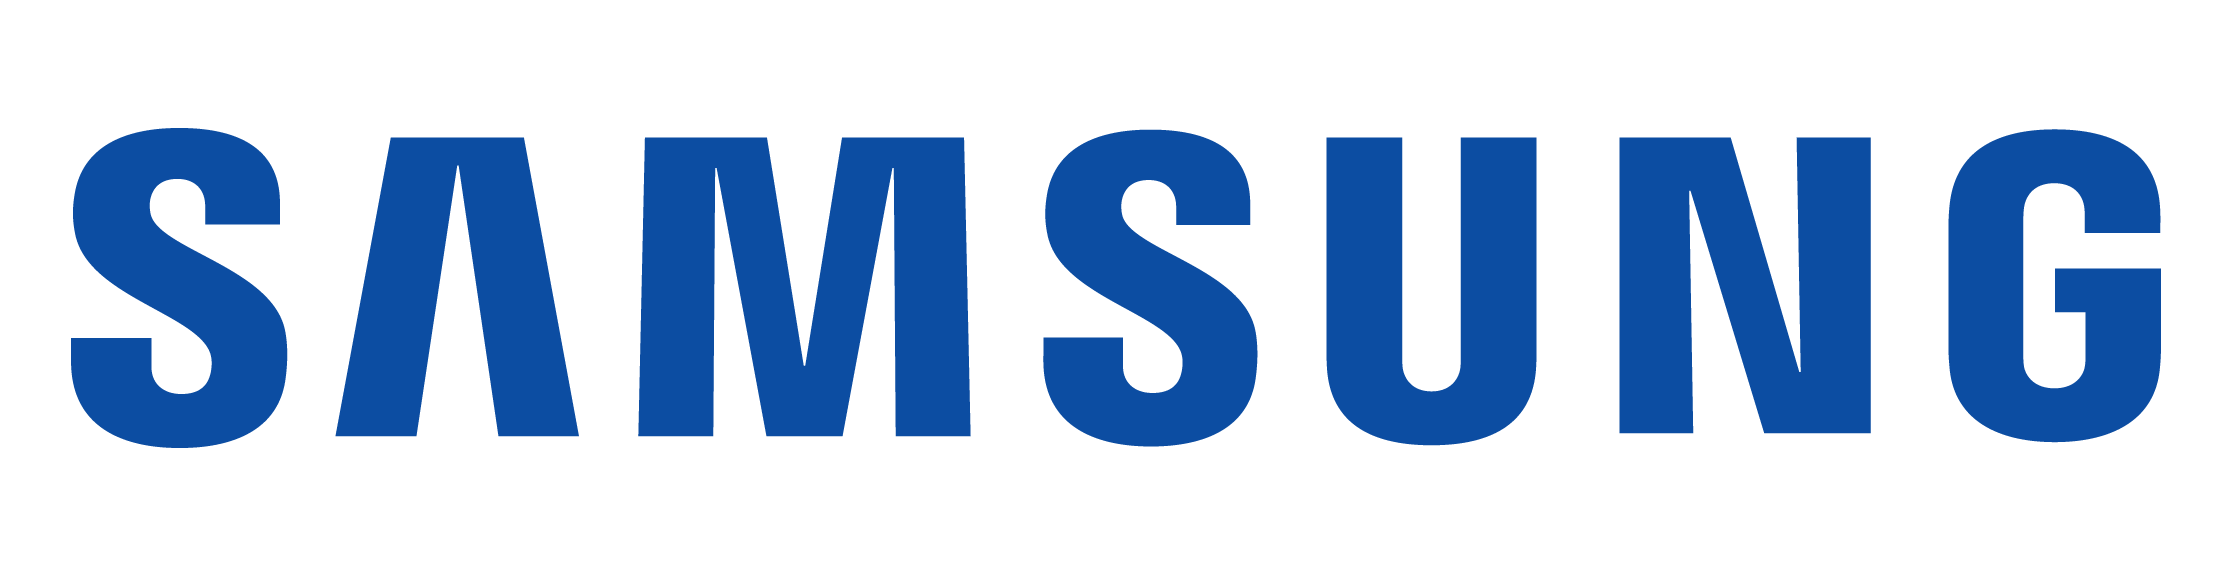 samsung-lettermark-blue.png